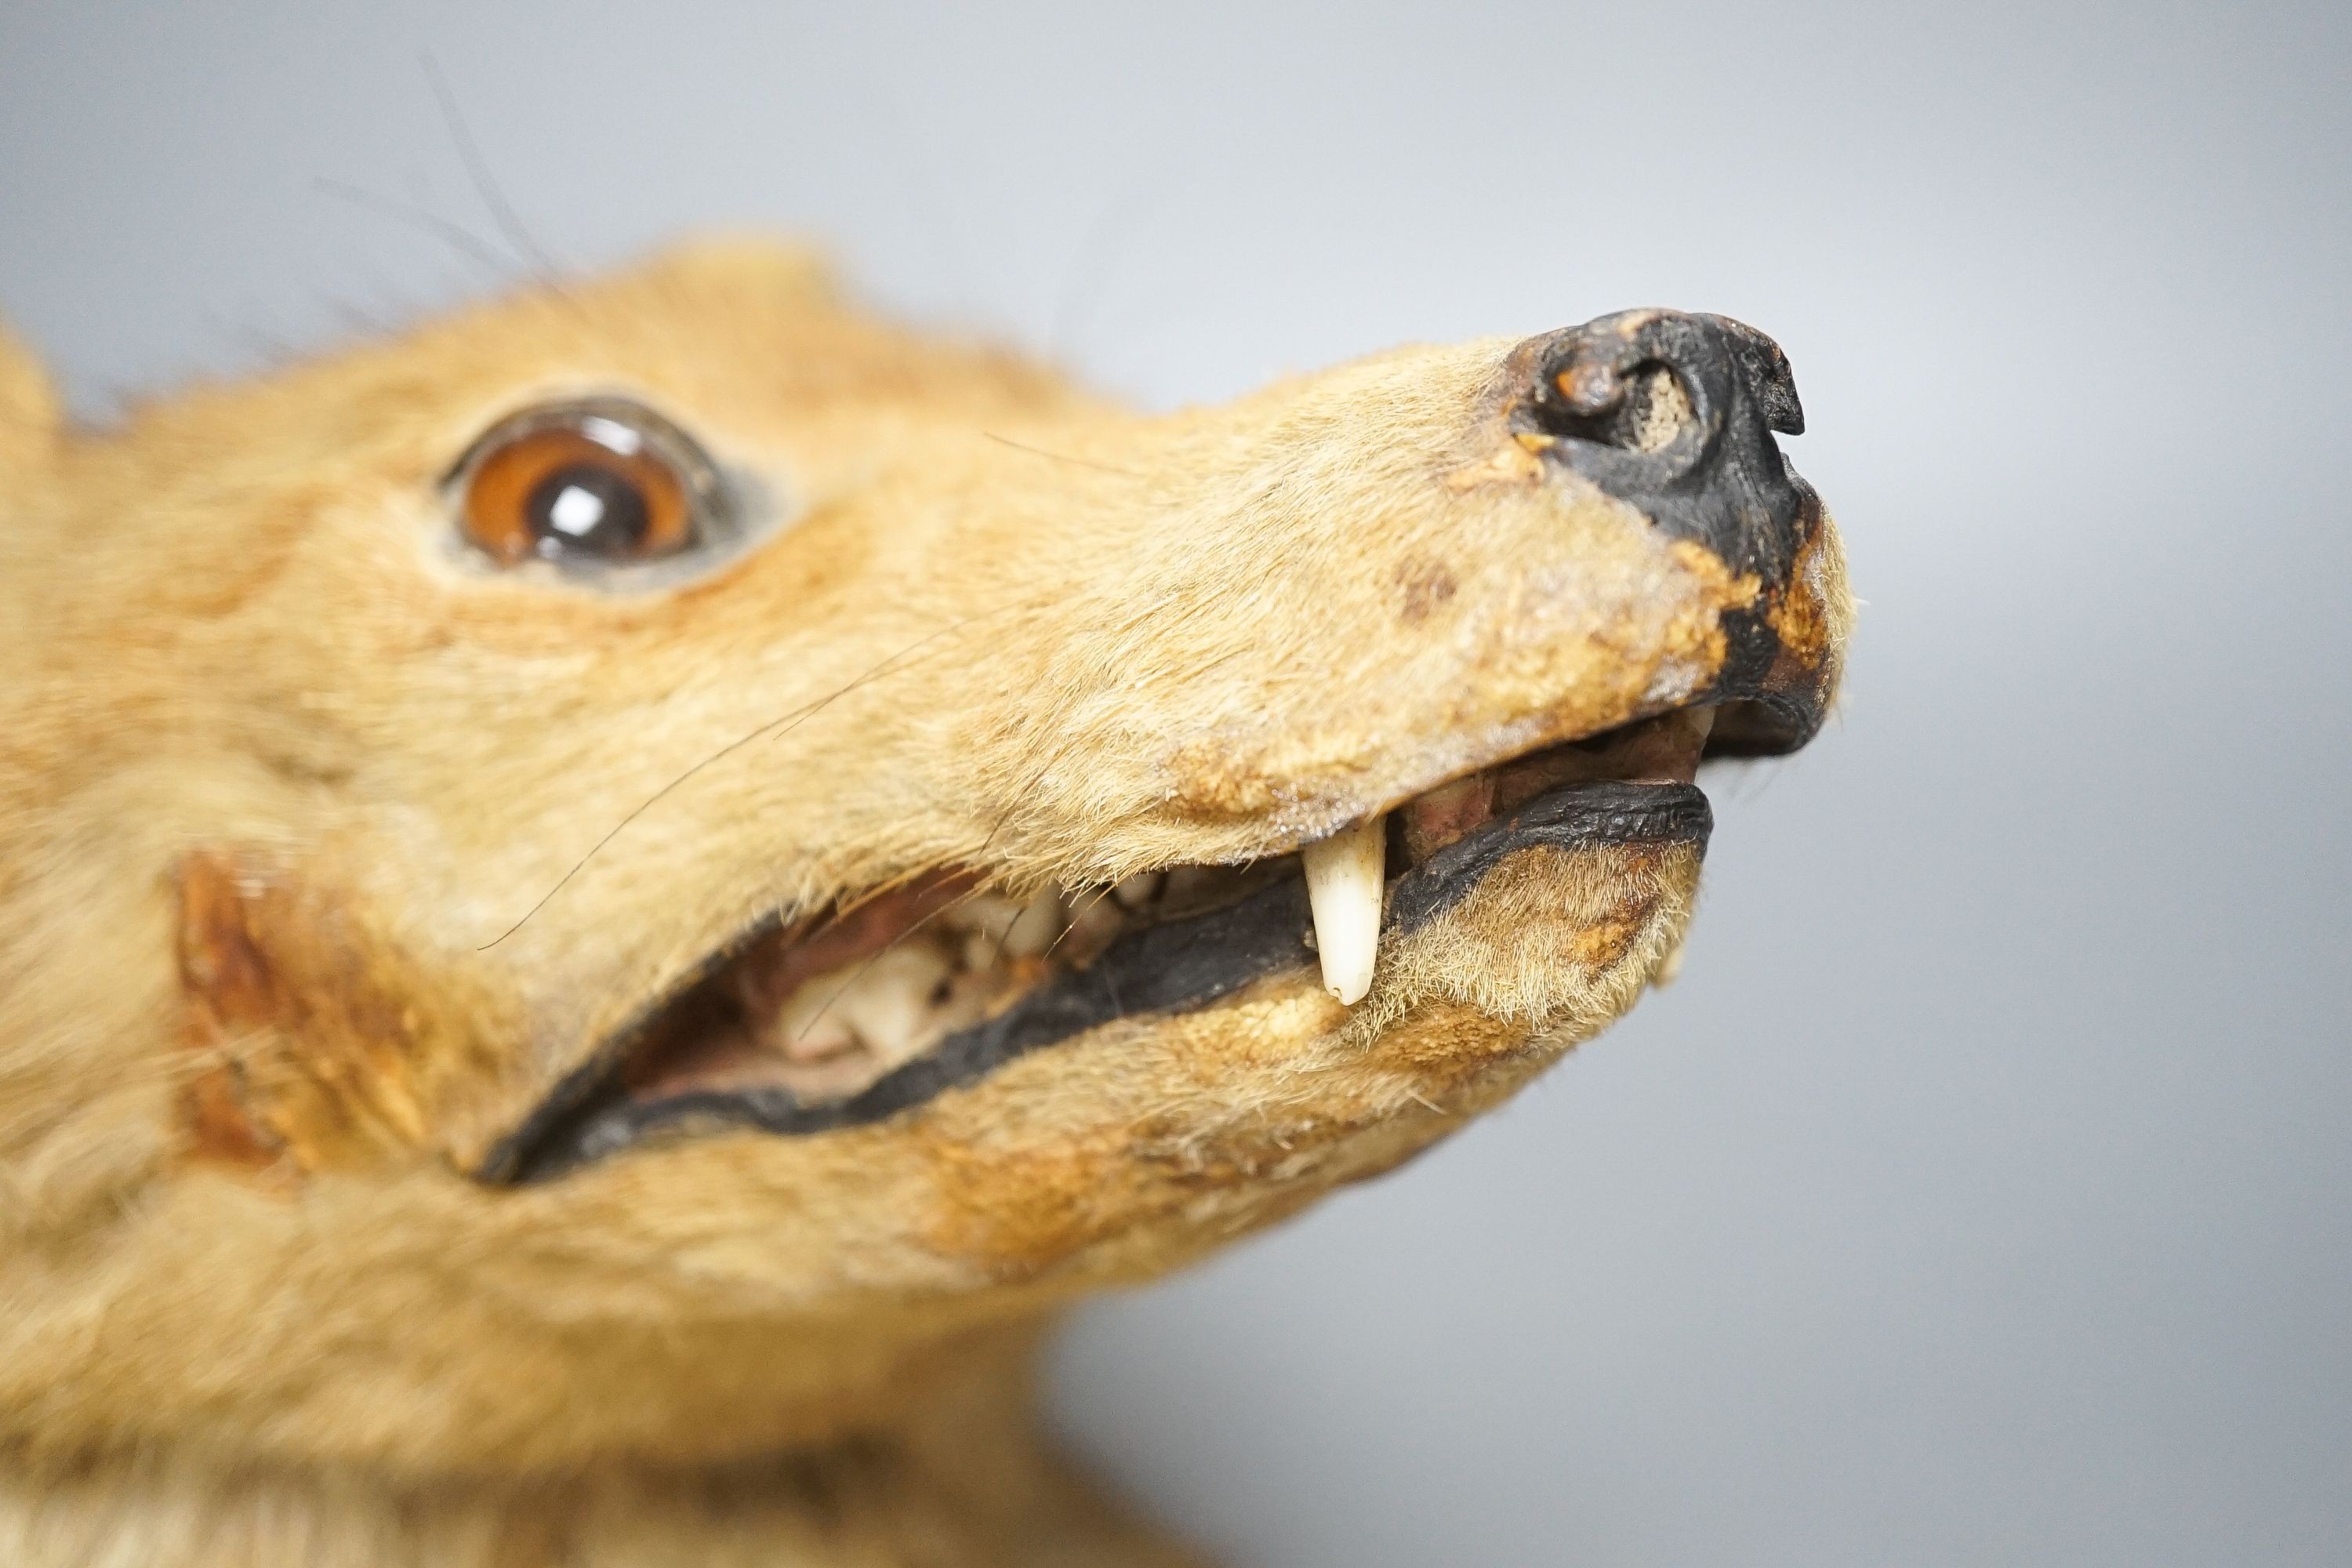 A taxidermy fox's head, mounted